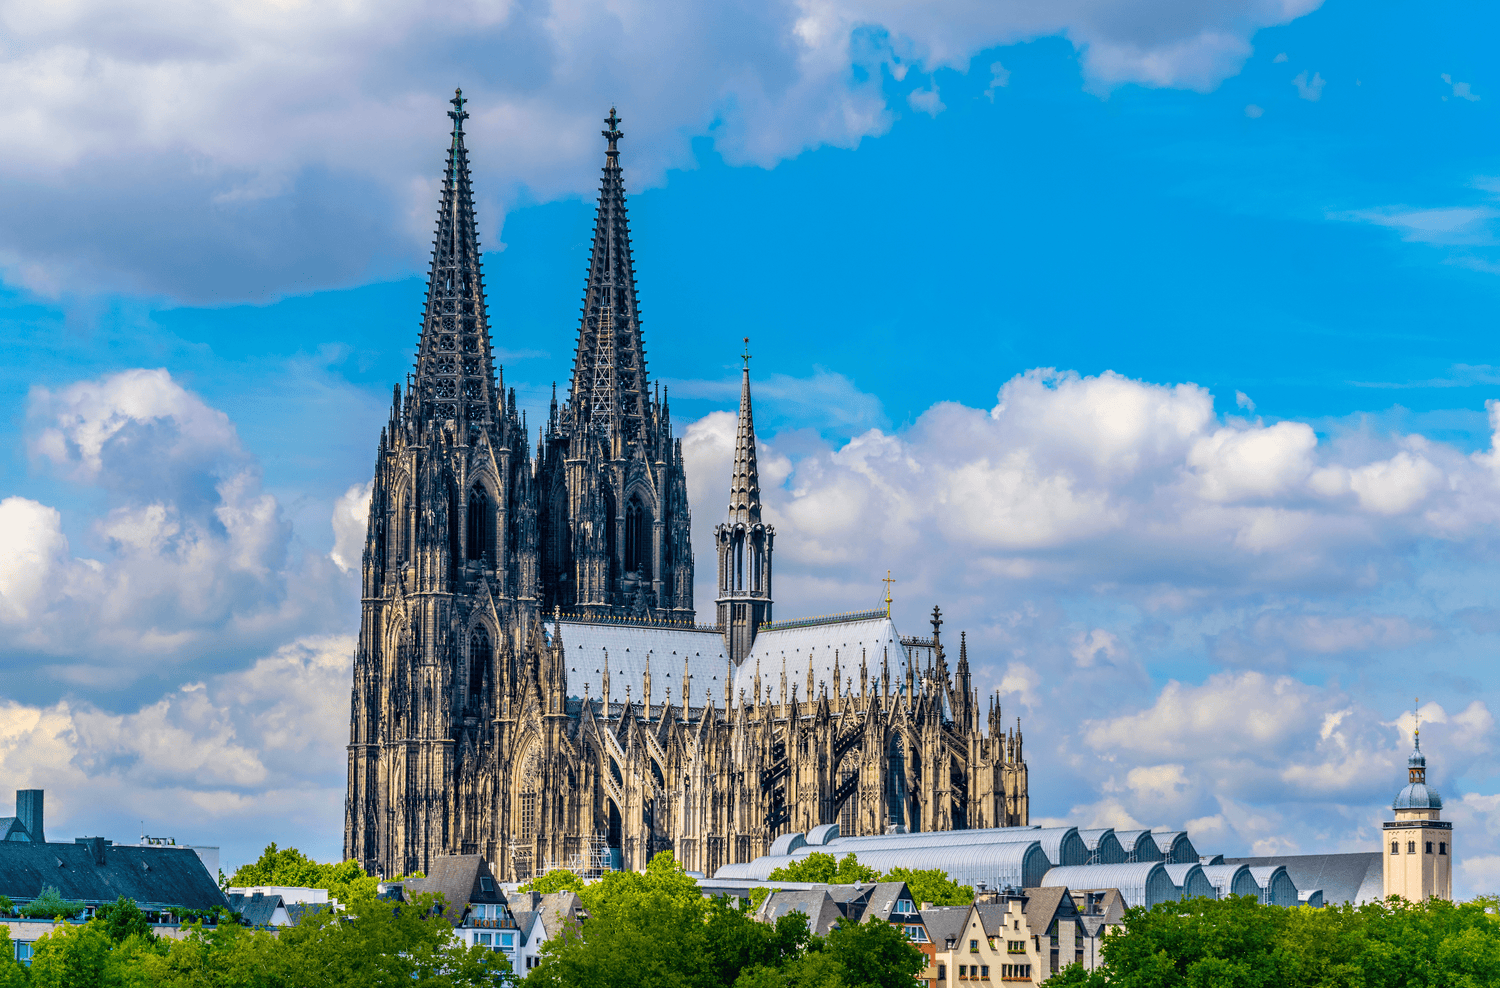 Das Bild zeigt den Kölner Dom bei Tageslicht mit kleinen Wolken am Himmel im Hintergrund. Die gotische Kathedrale ist gut beleuchtet und die Details der Fassade sind deutlich sichtbar.